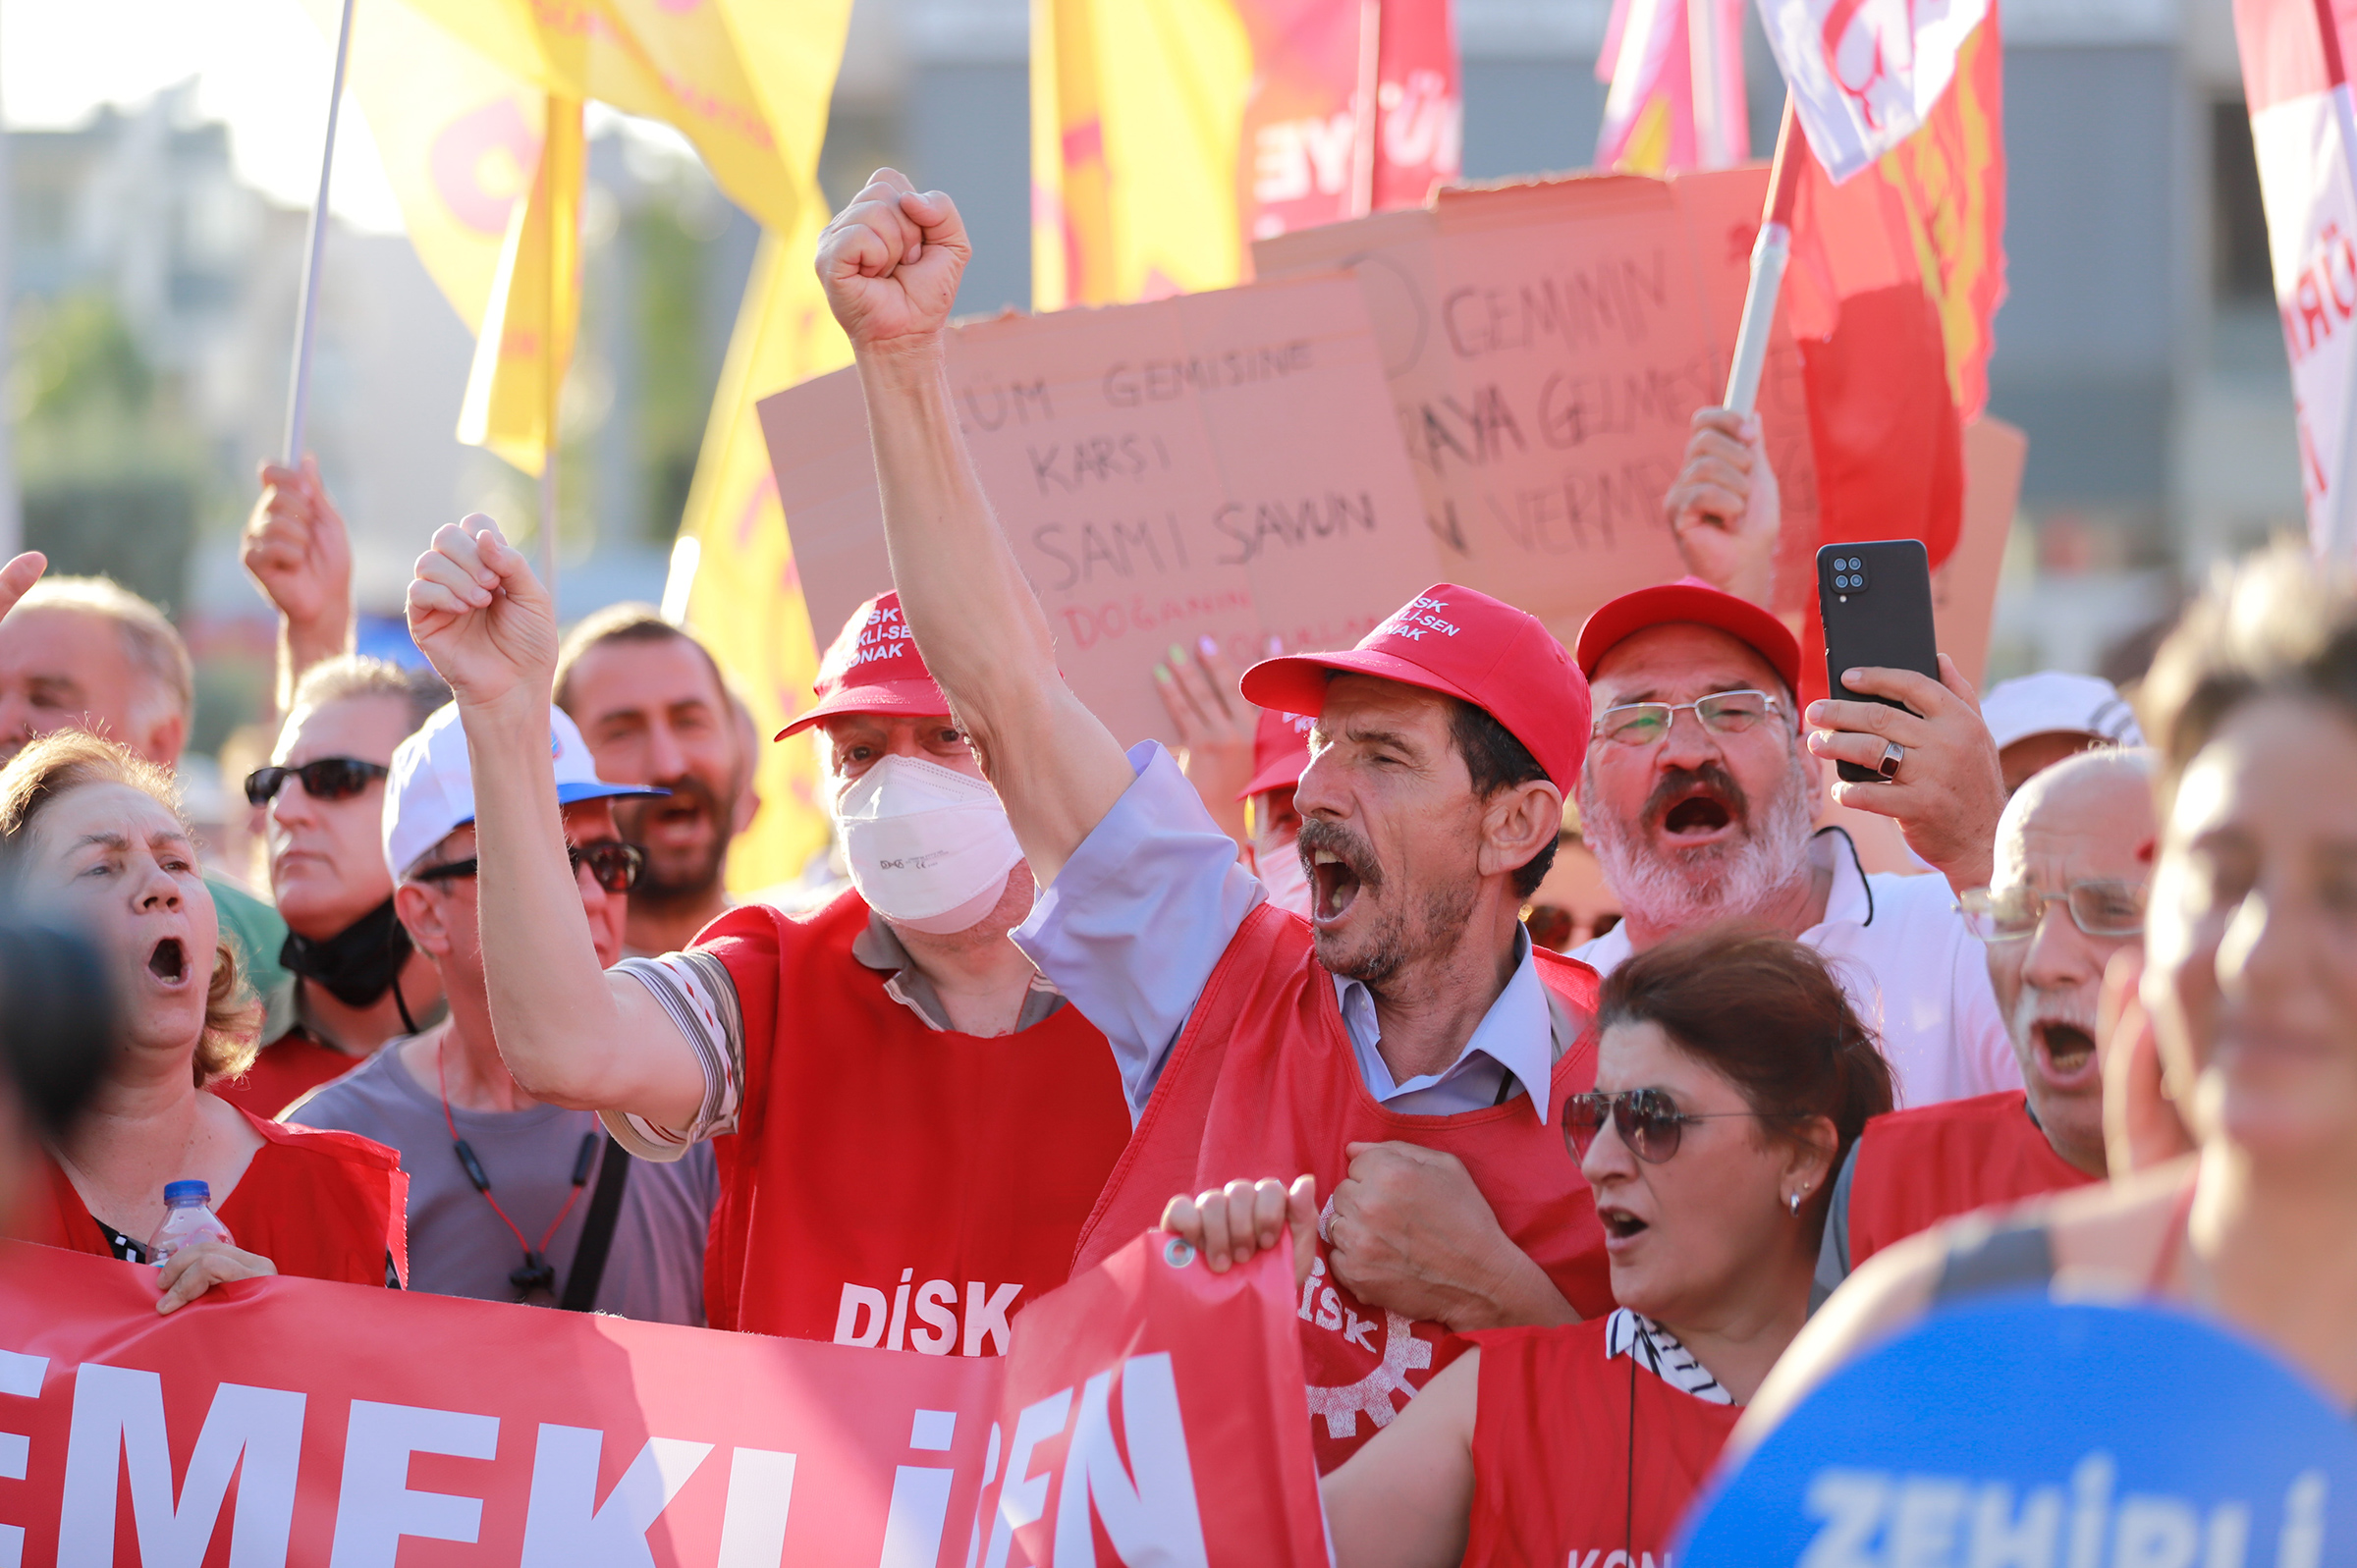 Vários partidos de oposição, sindicatos e ONGs da Turquia realizaram uma manifestação em massa contra o desmantelamento do porta-aviões brasileiro Nae São Paulo no distrito de Aliaga em Izmir, Turquia, em 4 de agosto de 2022.  (Berkcan Zengin—GocherImagery/Reuters)